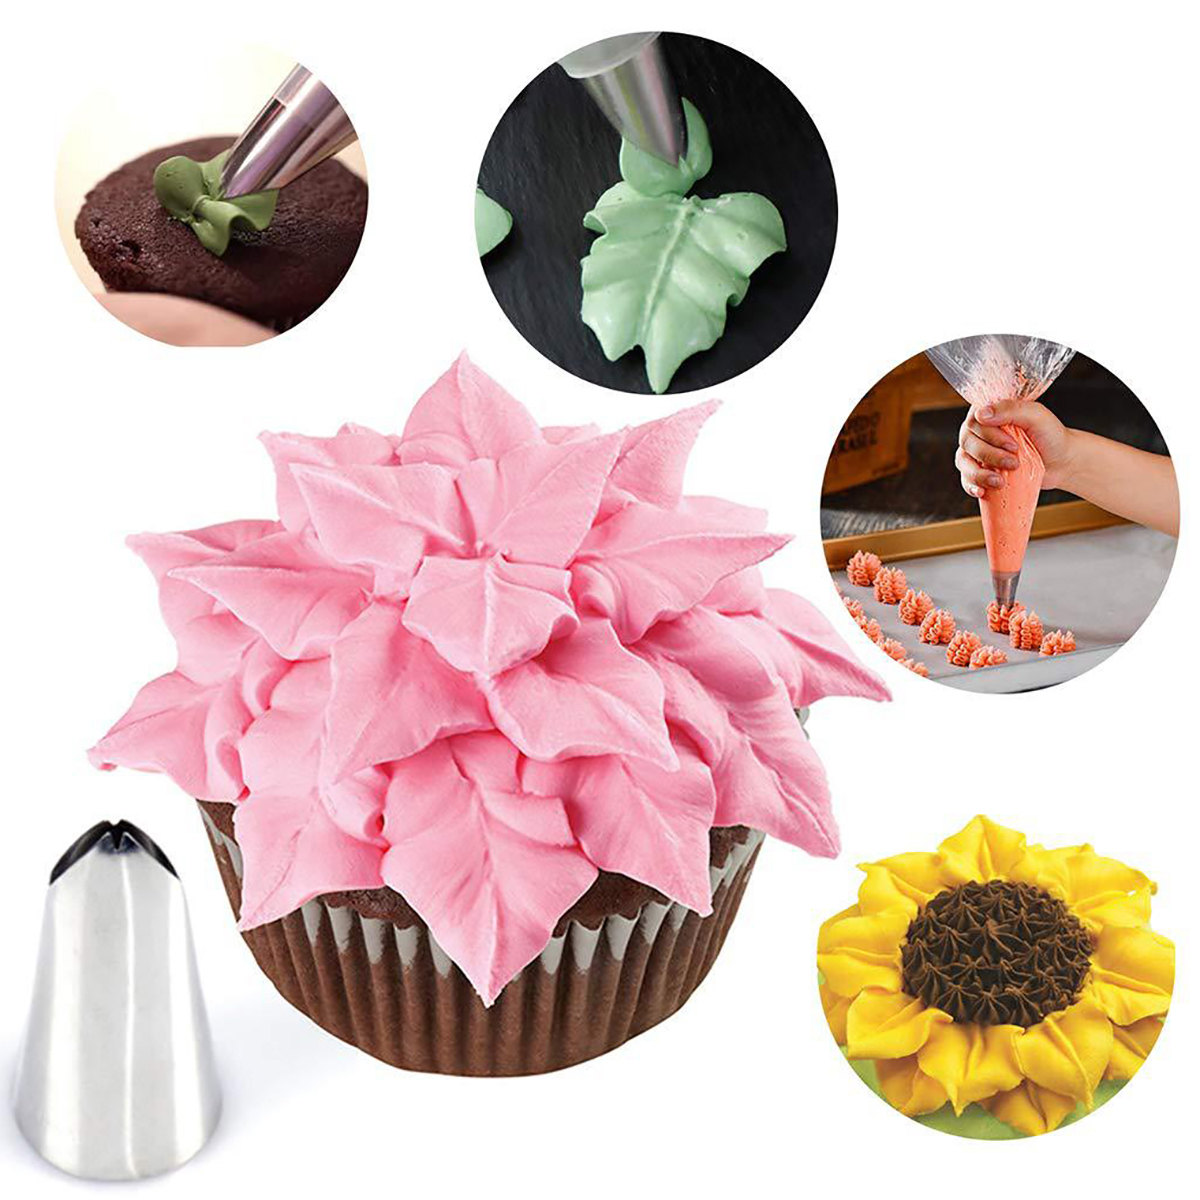 38727883-PCS-Cake-Decorating-Supplies-Kits-Pastry-Supplies-DIY-Tools-1849126-14